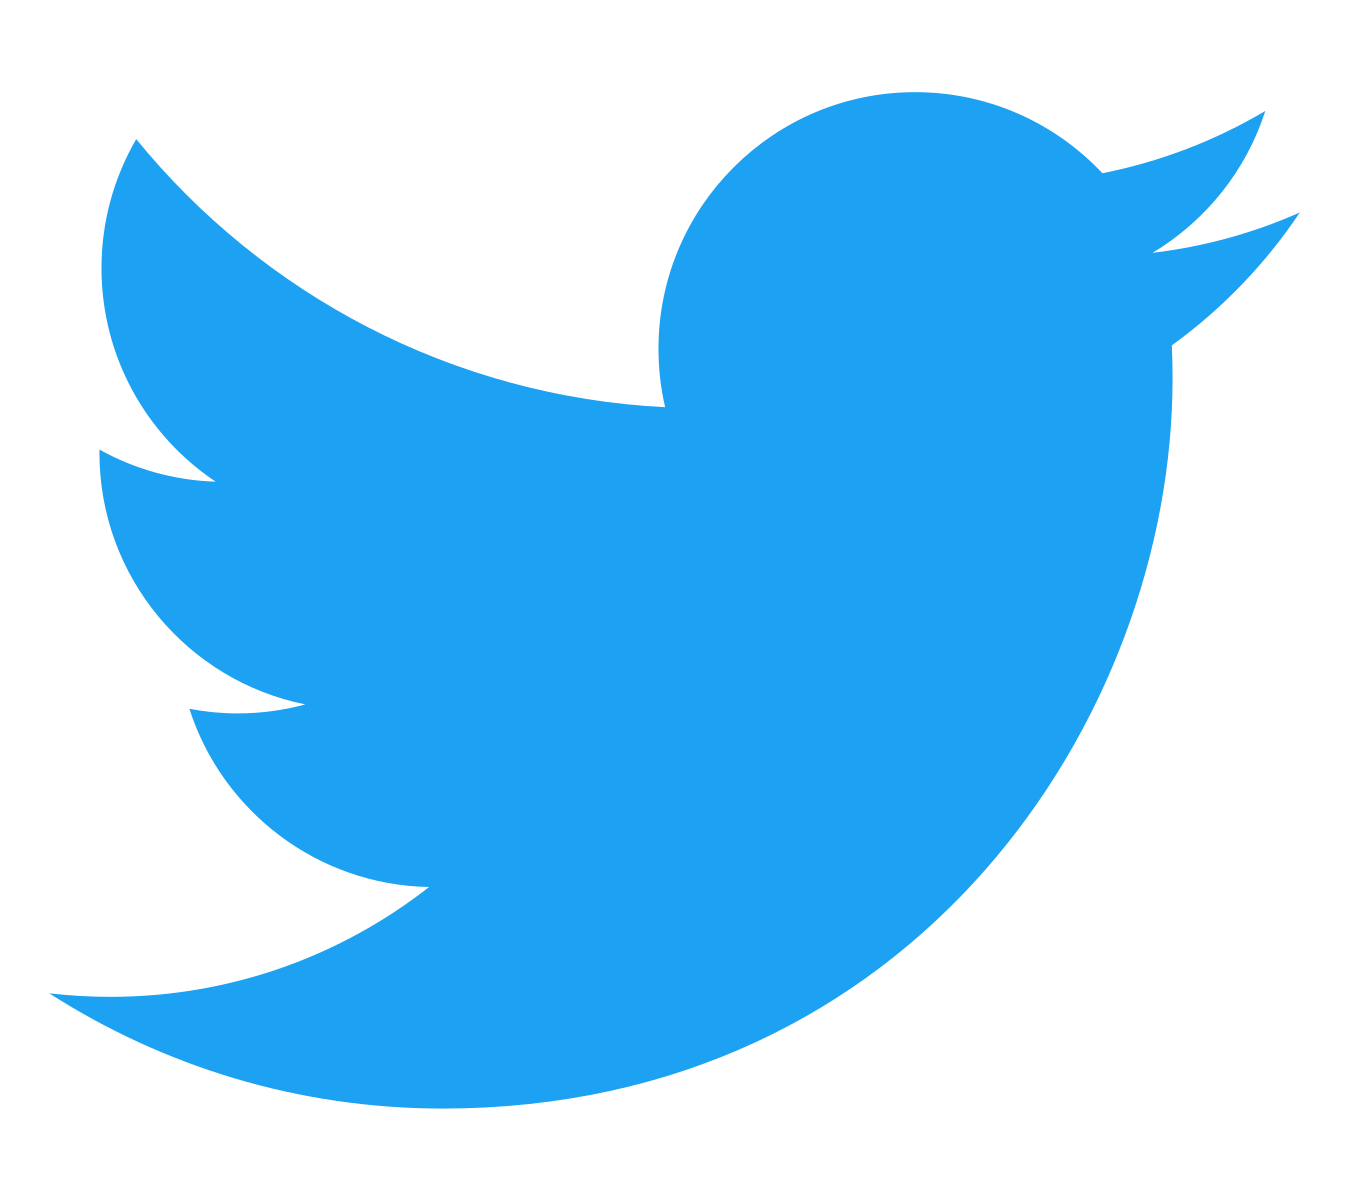 Twitter Logo of small blue bird.